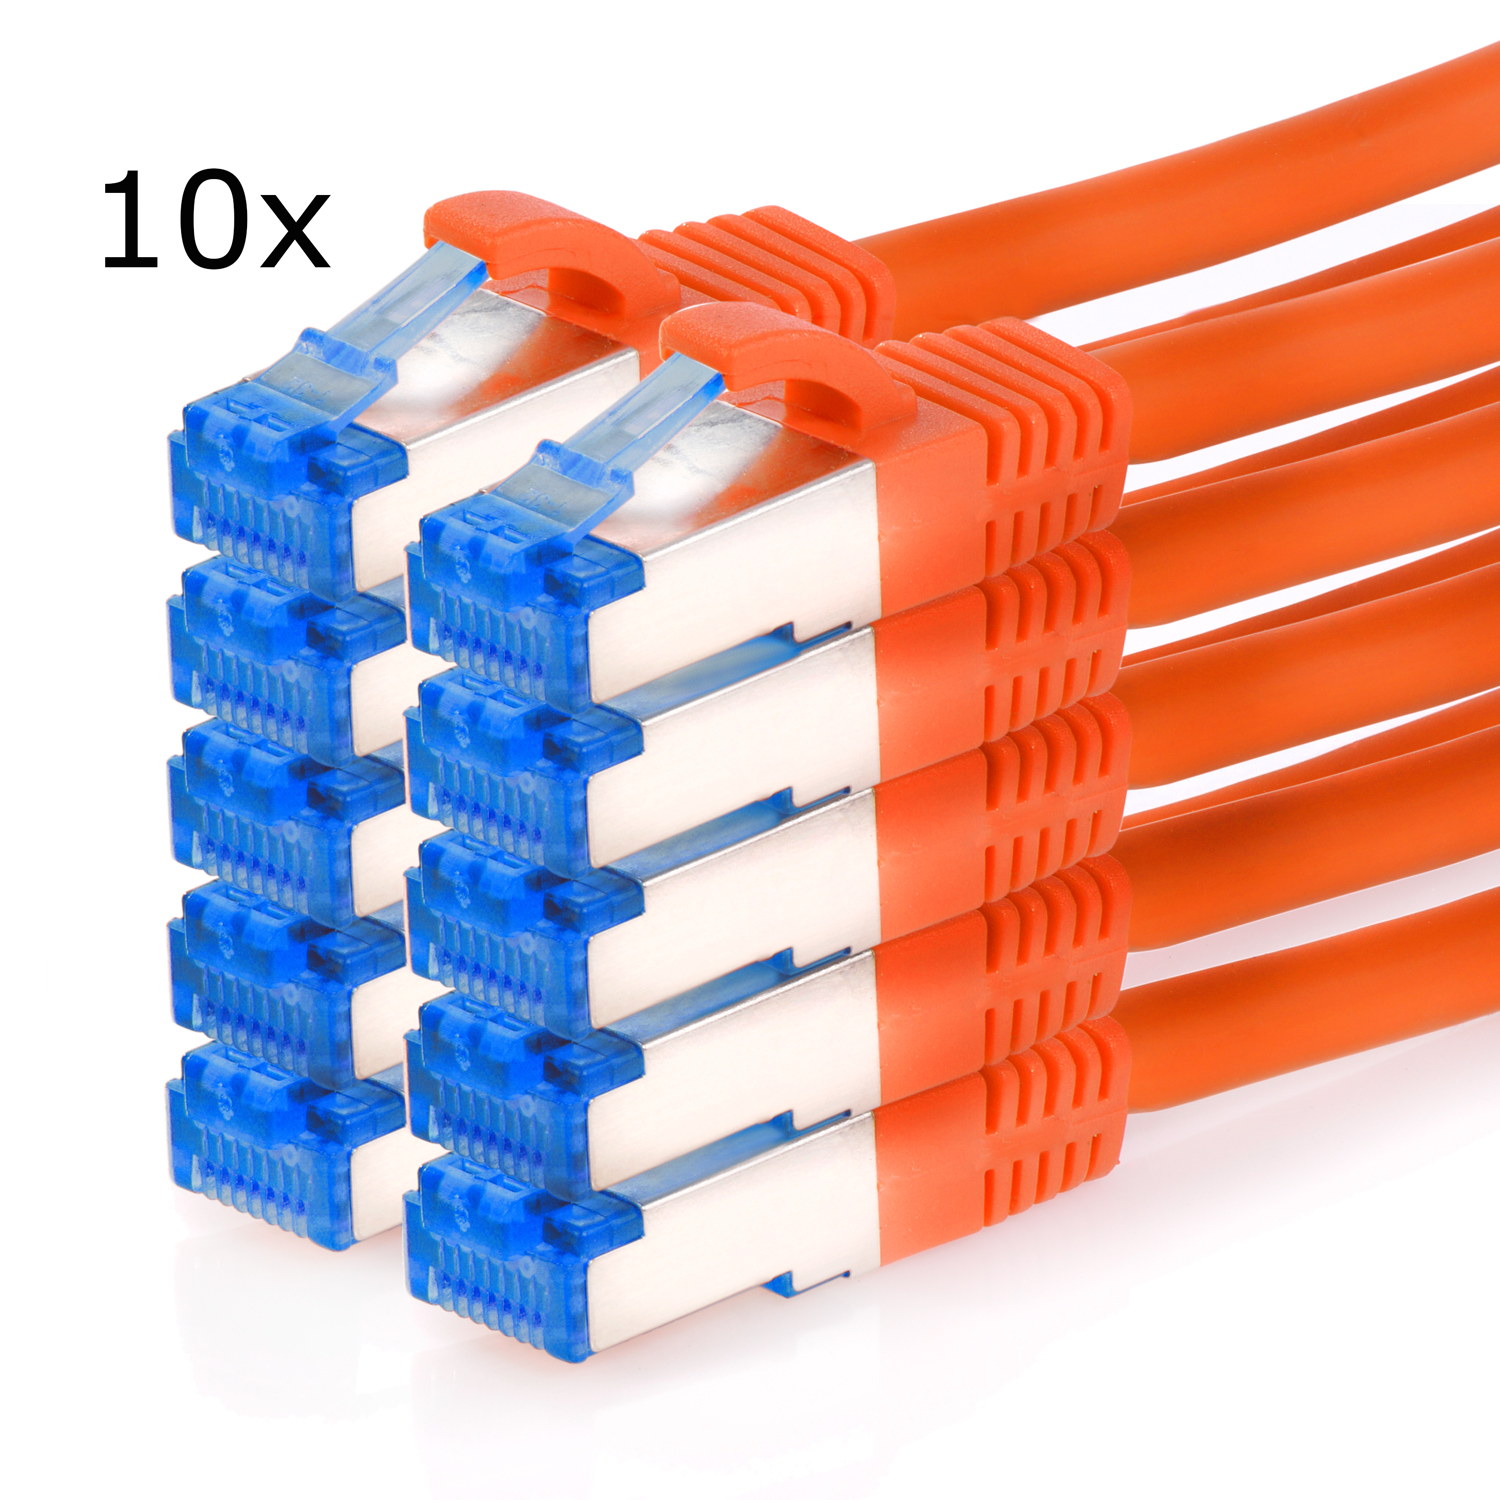 TPFNET 10er Pack Patchkabel orange, 10GBit, 1m S/FTP Netzwerkkabel, 1 m / Netzwerkkabel